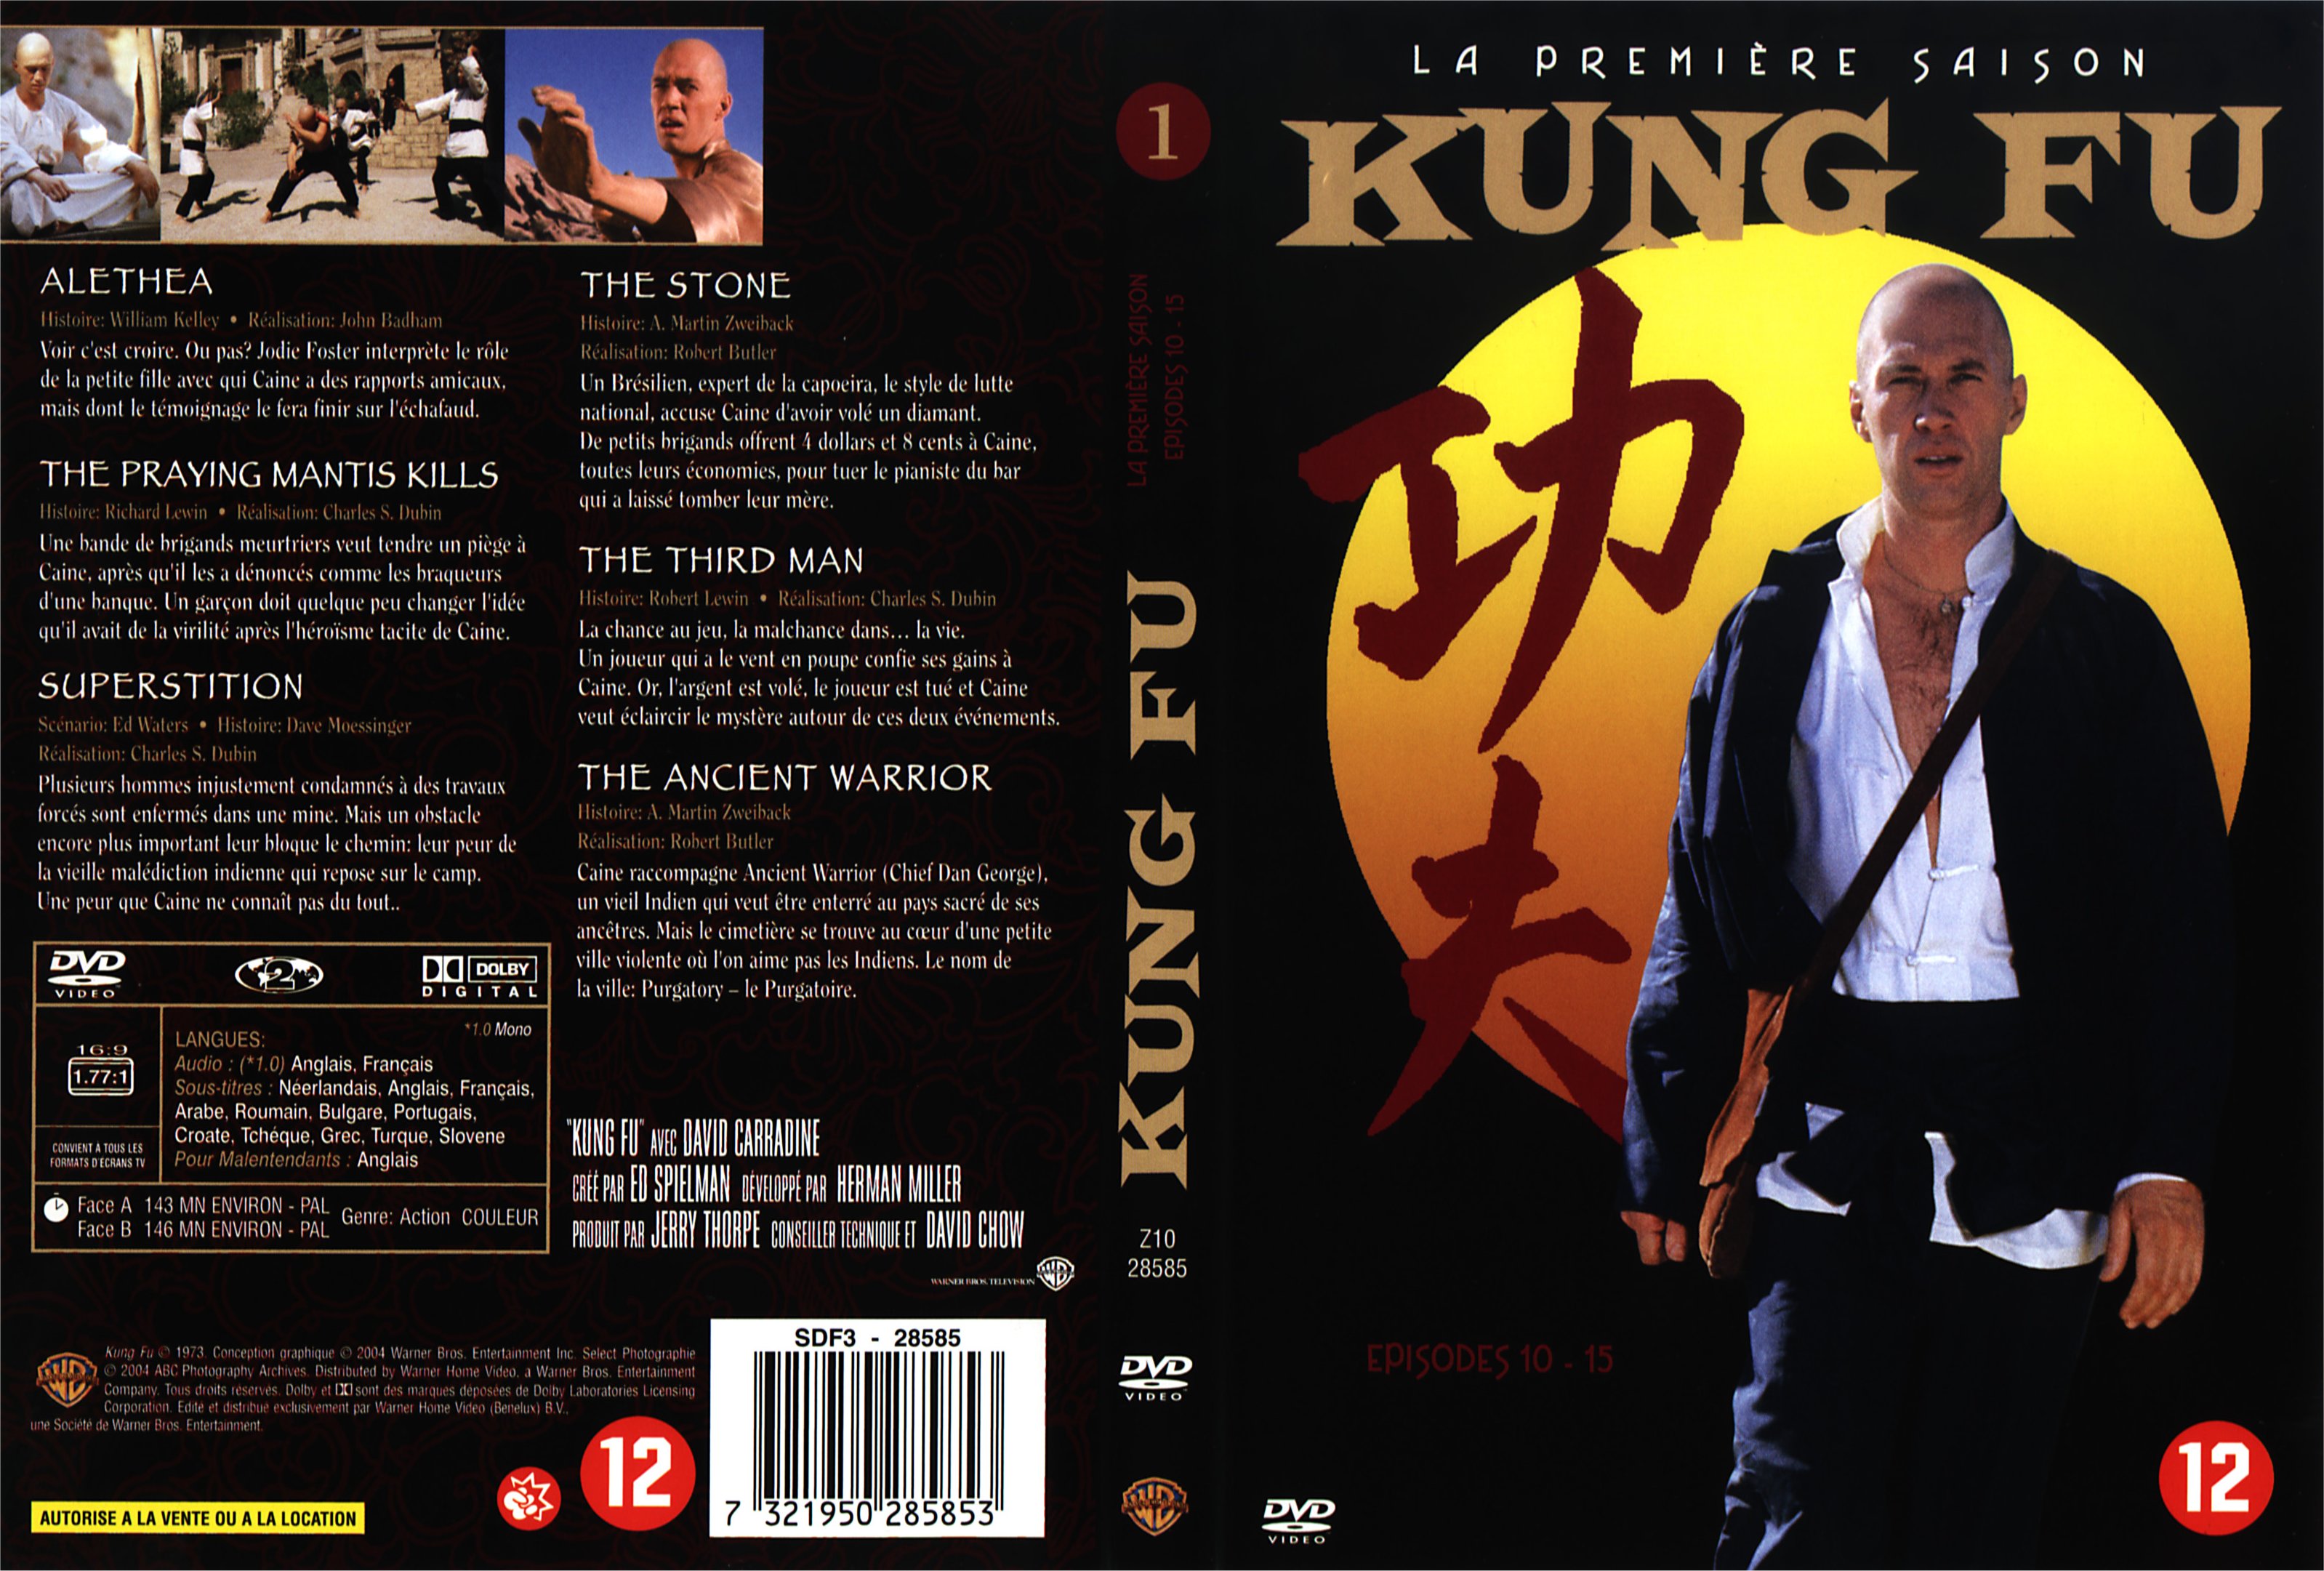 Jaquette DVD Kung fu saison 1 vol 3